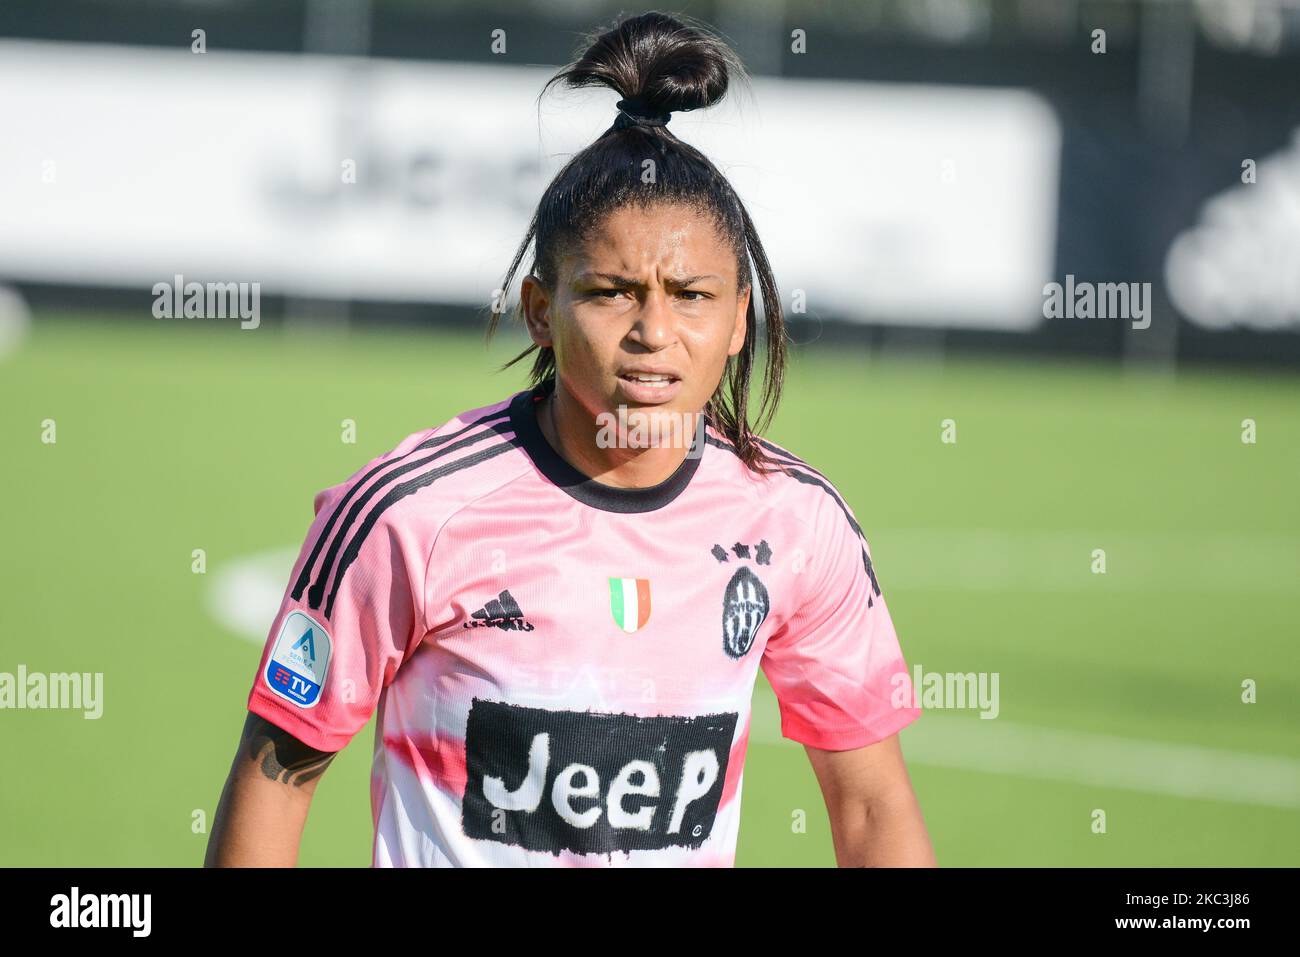 Maria Alves assina contrato com a Juventus e espera estrear contra o  Barcelona na Champions, futebol internacional